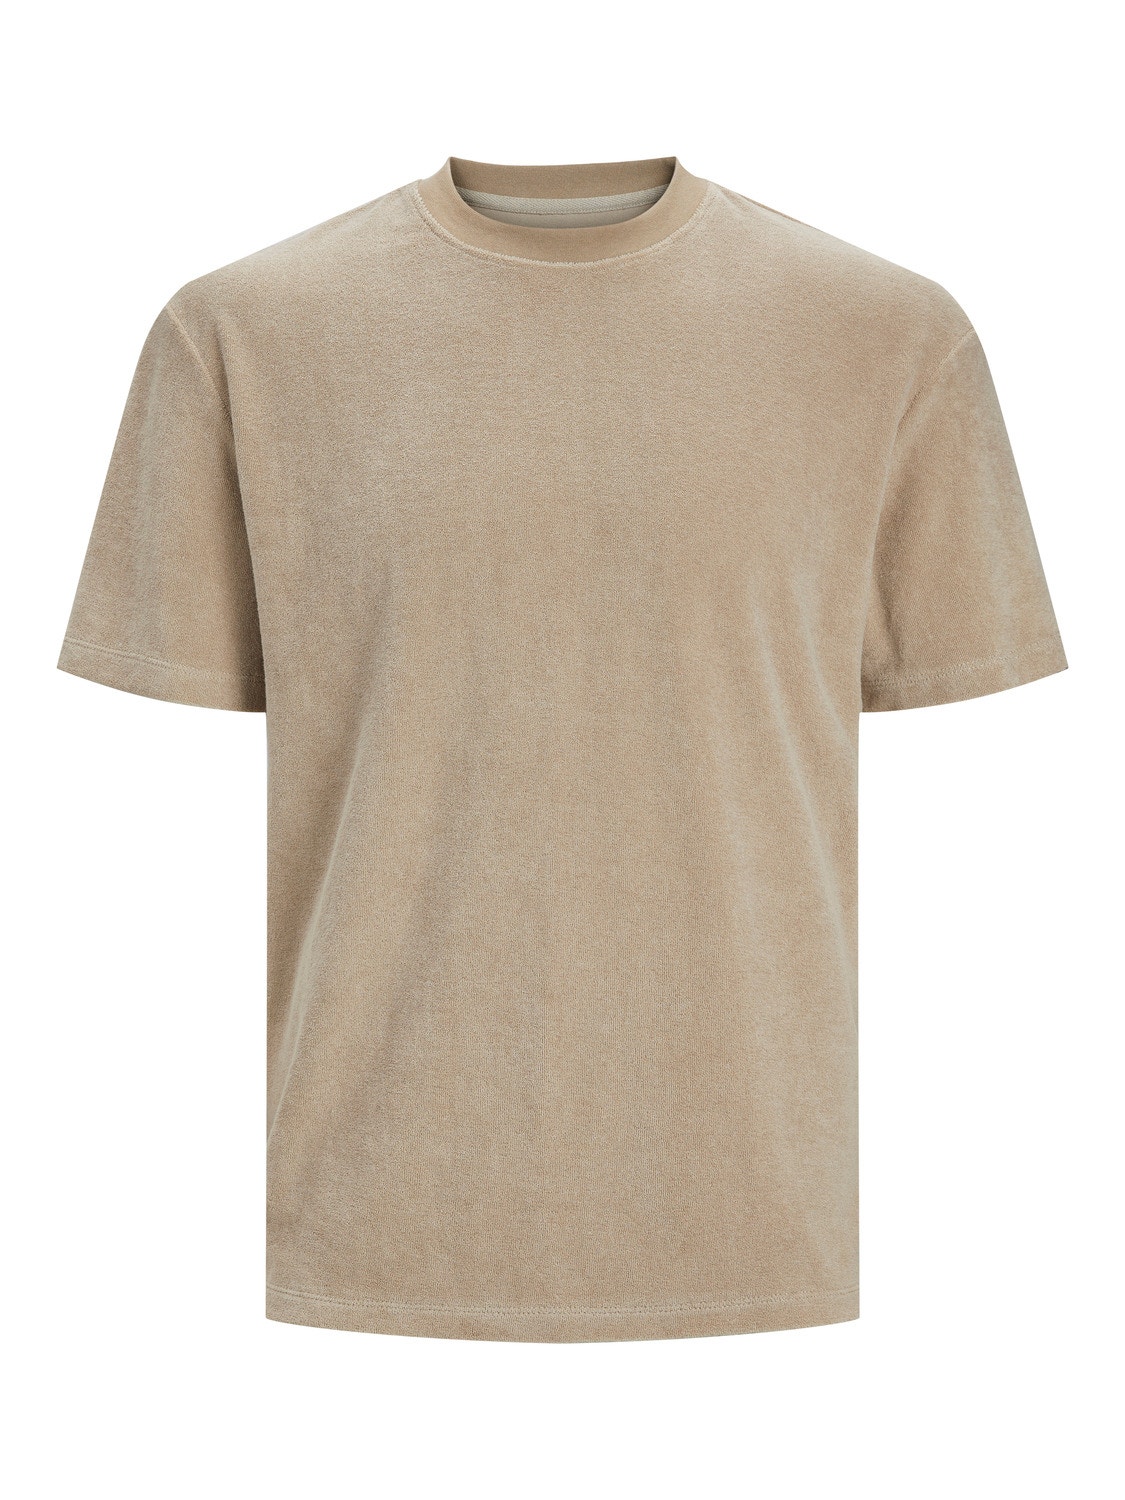 Jack & Jones Plain Crew neck T-shirt -Crockery - 12237489